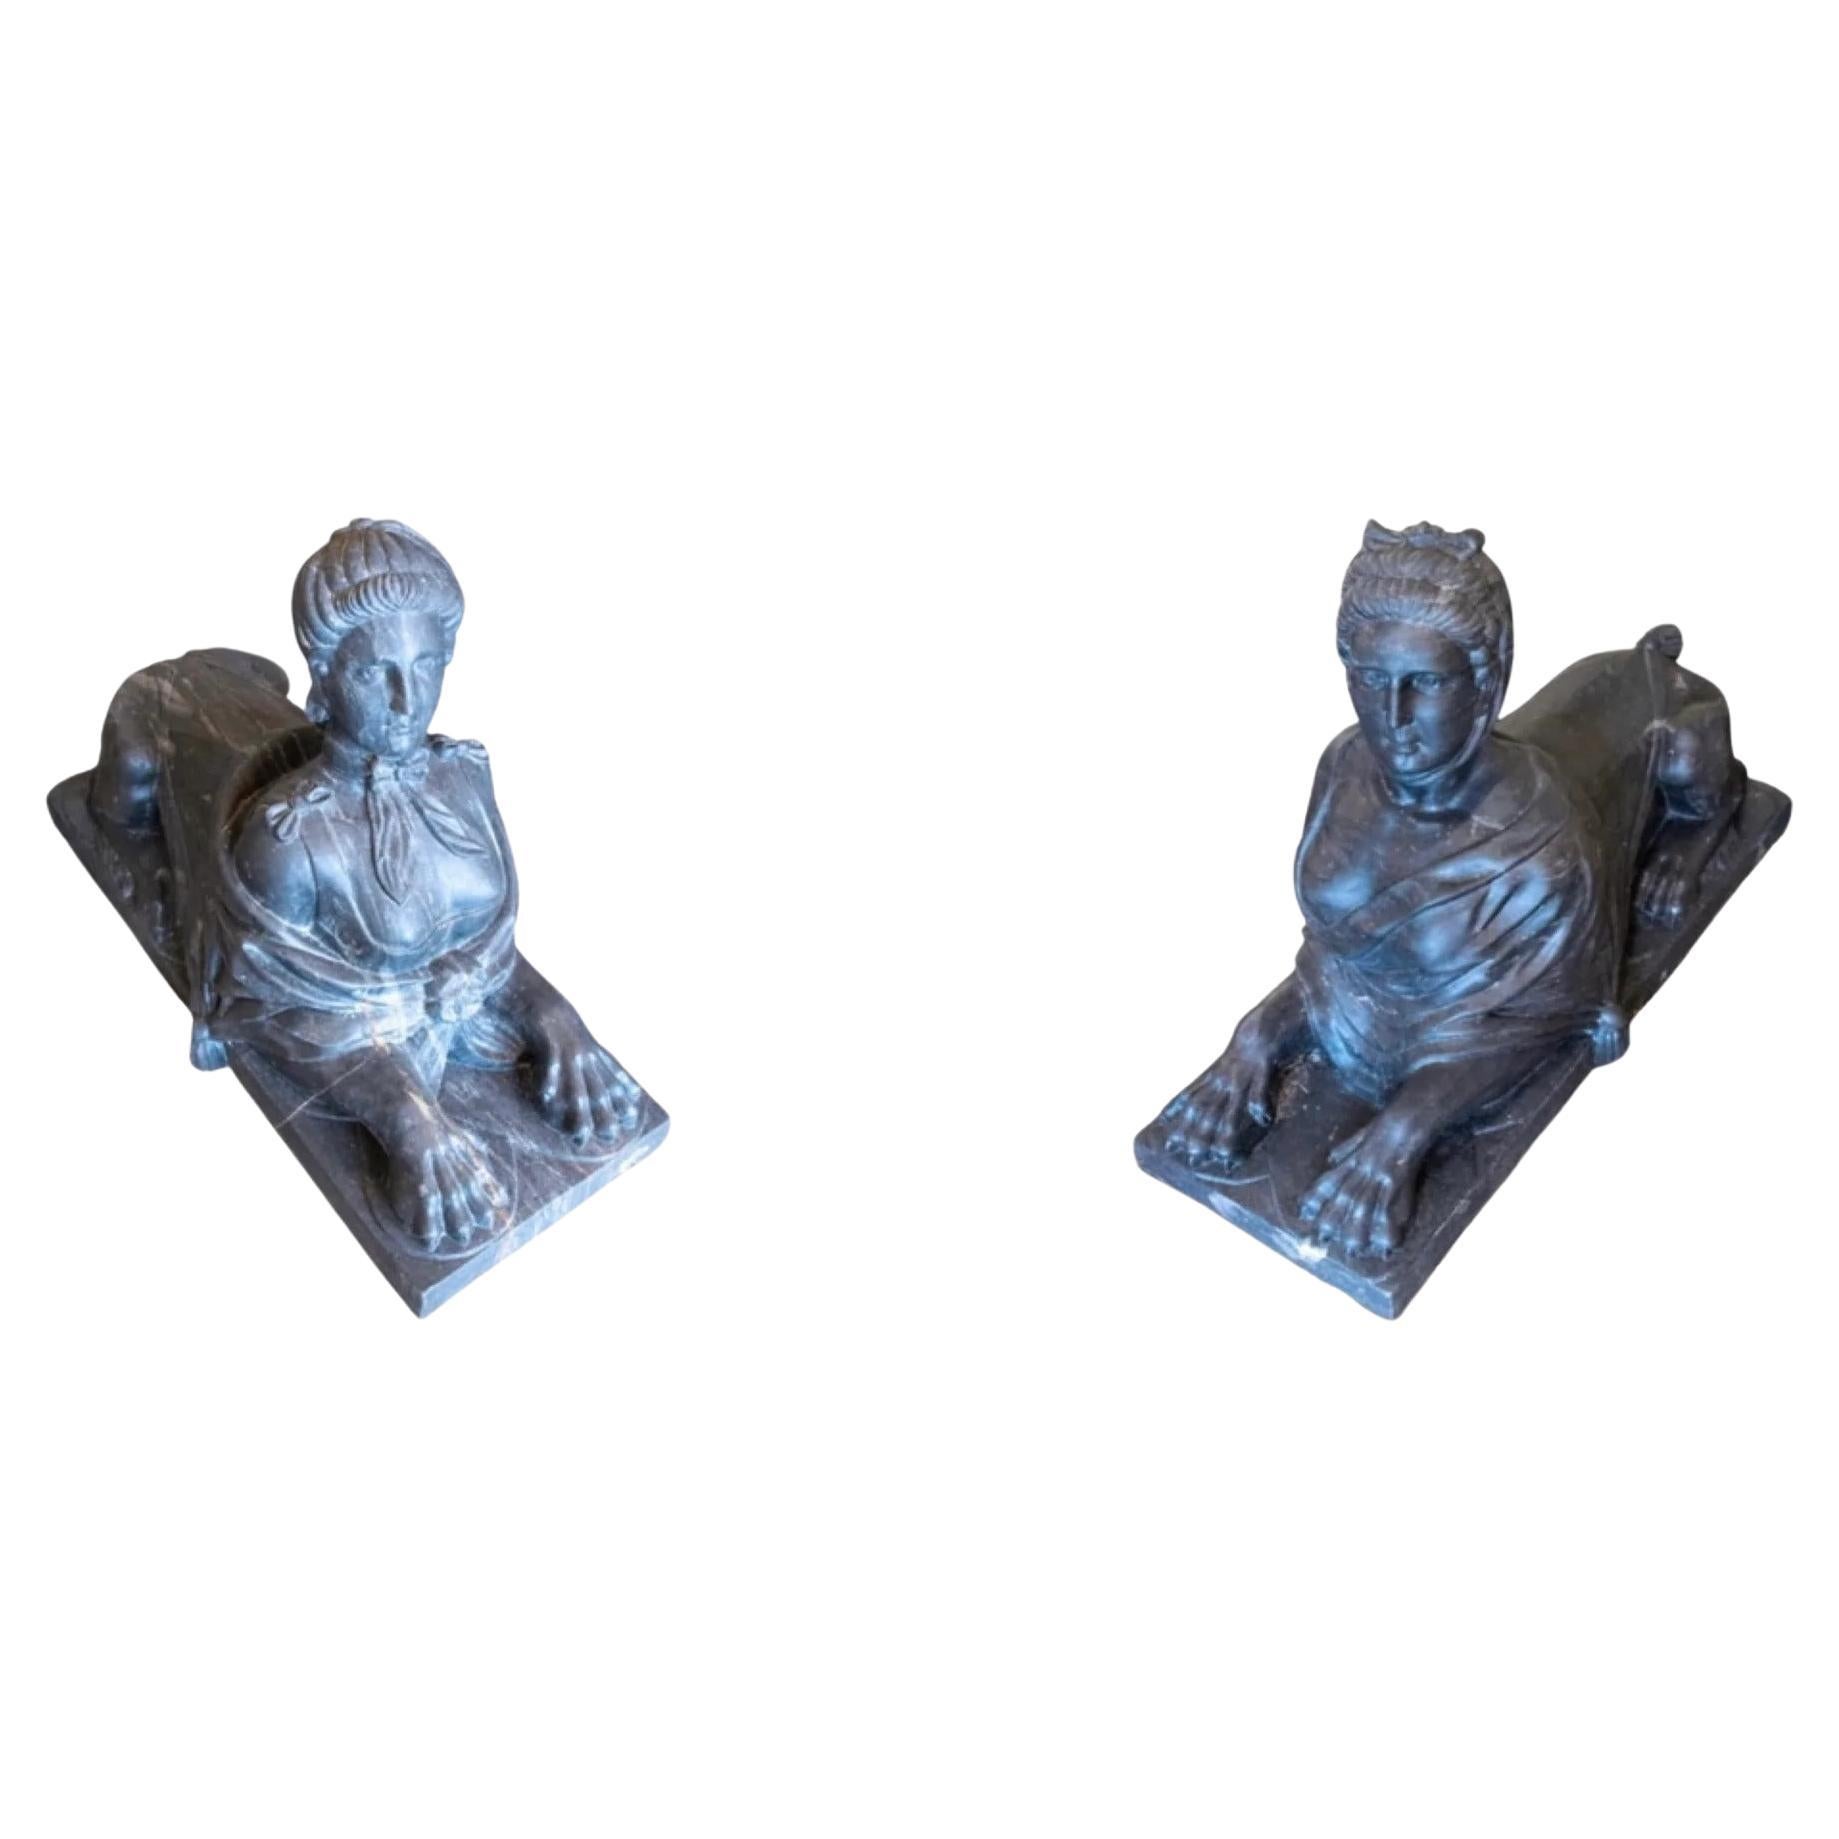 Belgium Bluestone Sphinx Sculptures For Sale